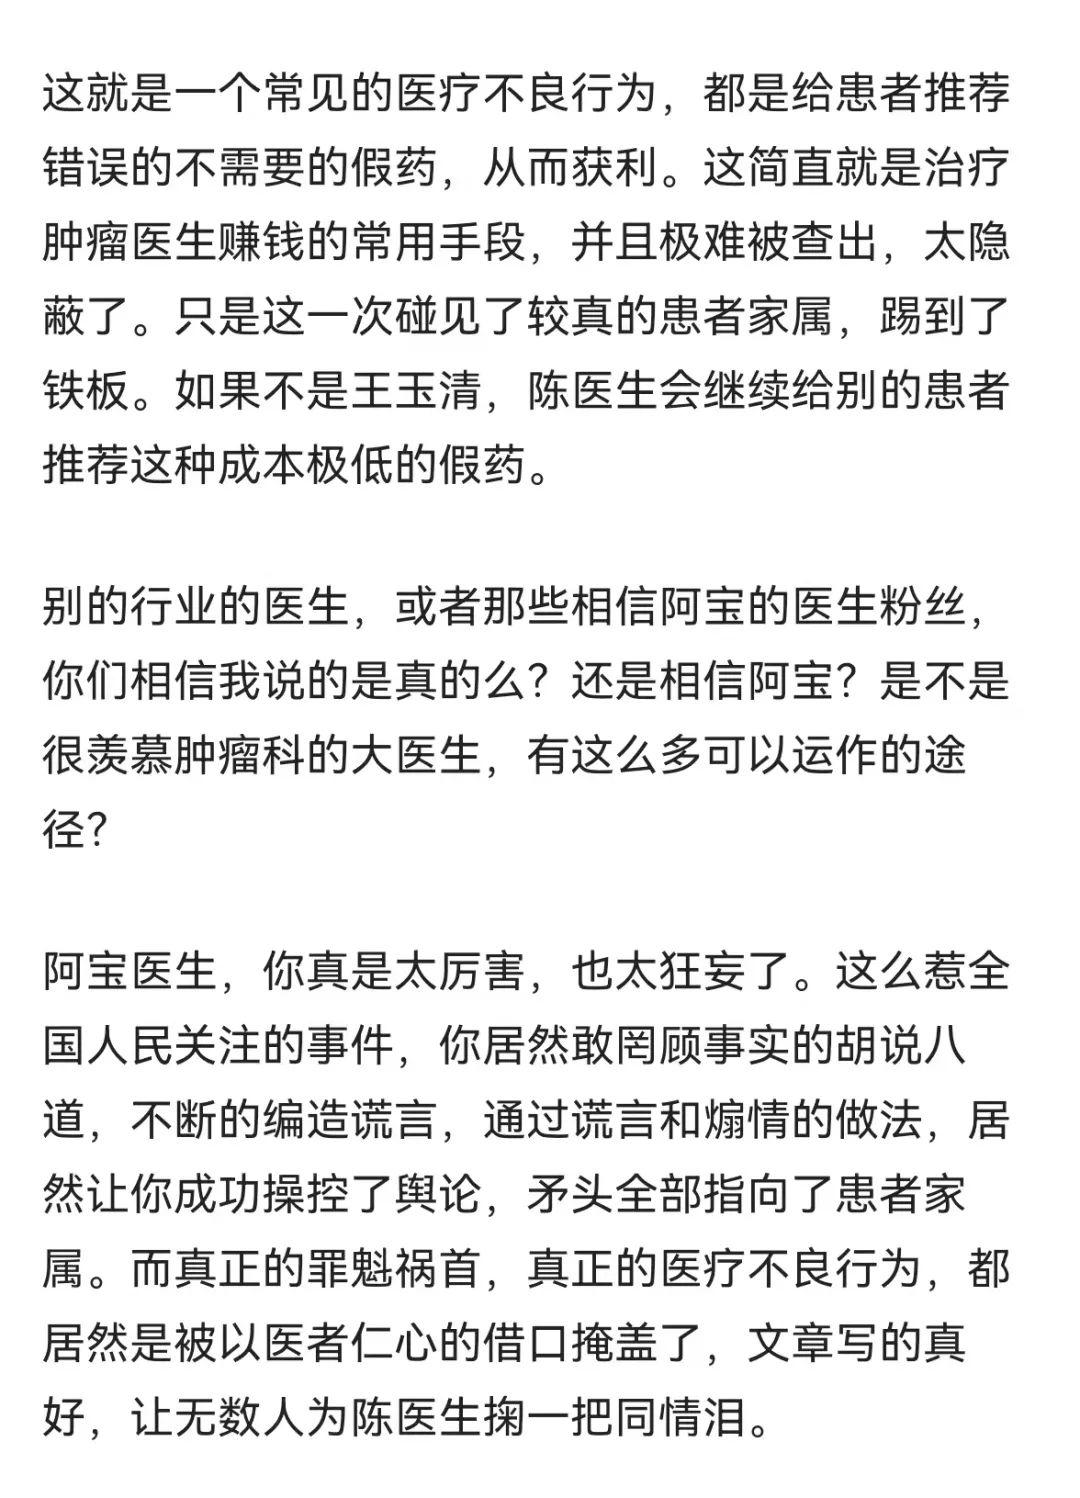 怎么看待北京大学第三医院肿瘤内科张煜医生被开除? 